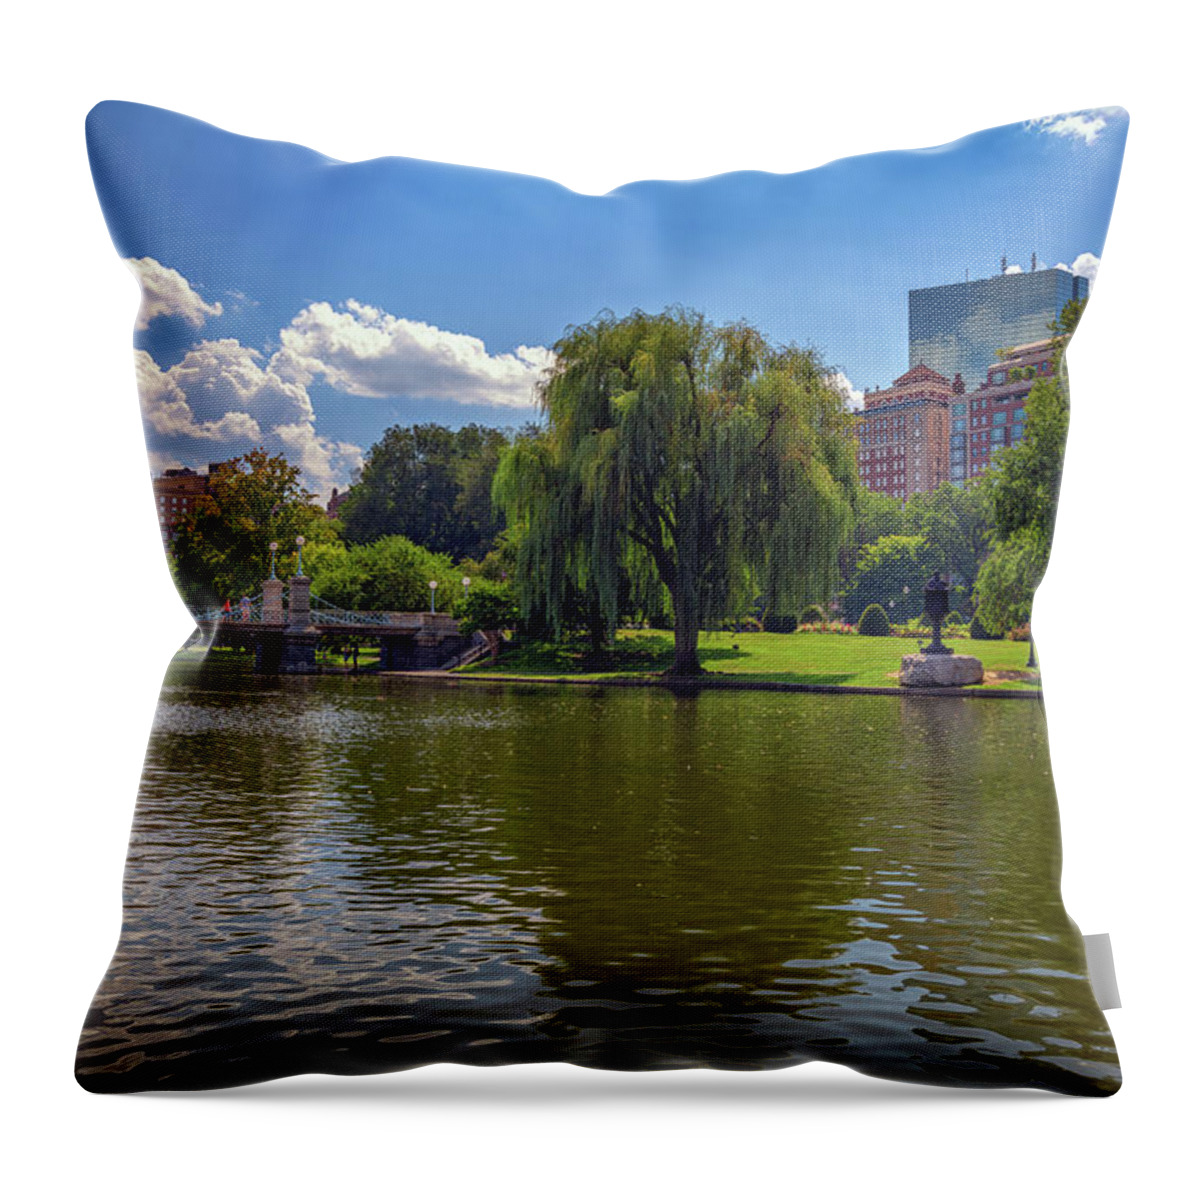 Boston Public Garden Throw Pillow featuring the photograph Boston Public Garden by Rick Berk